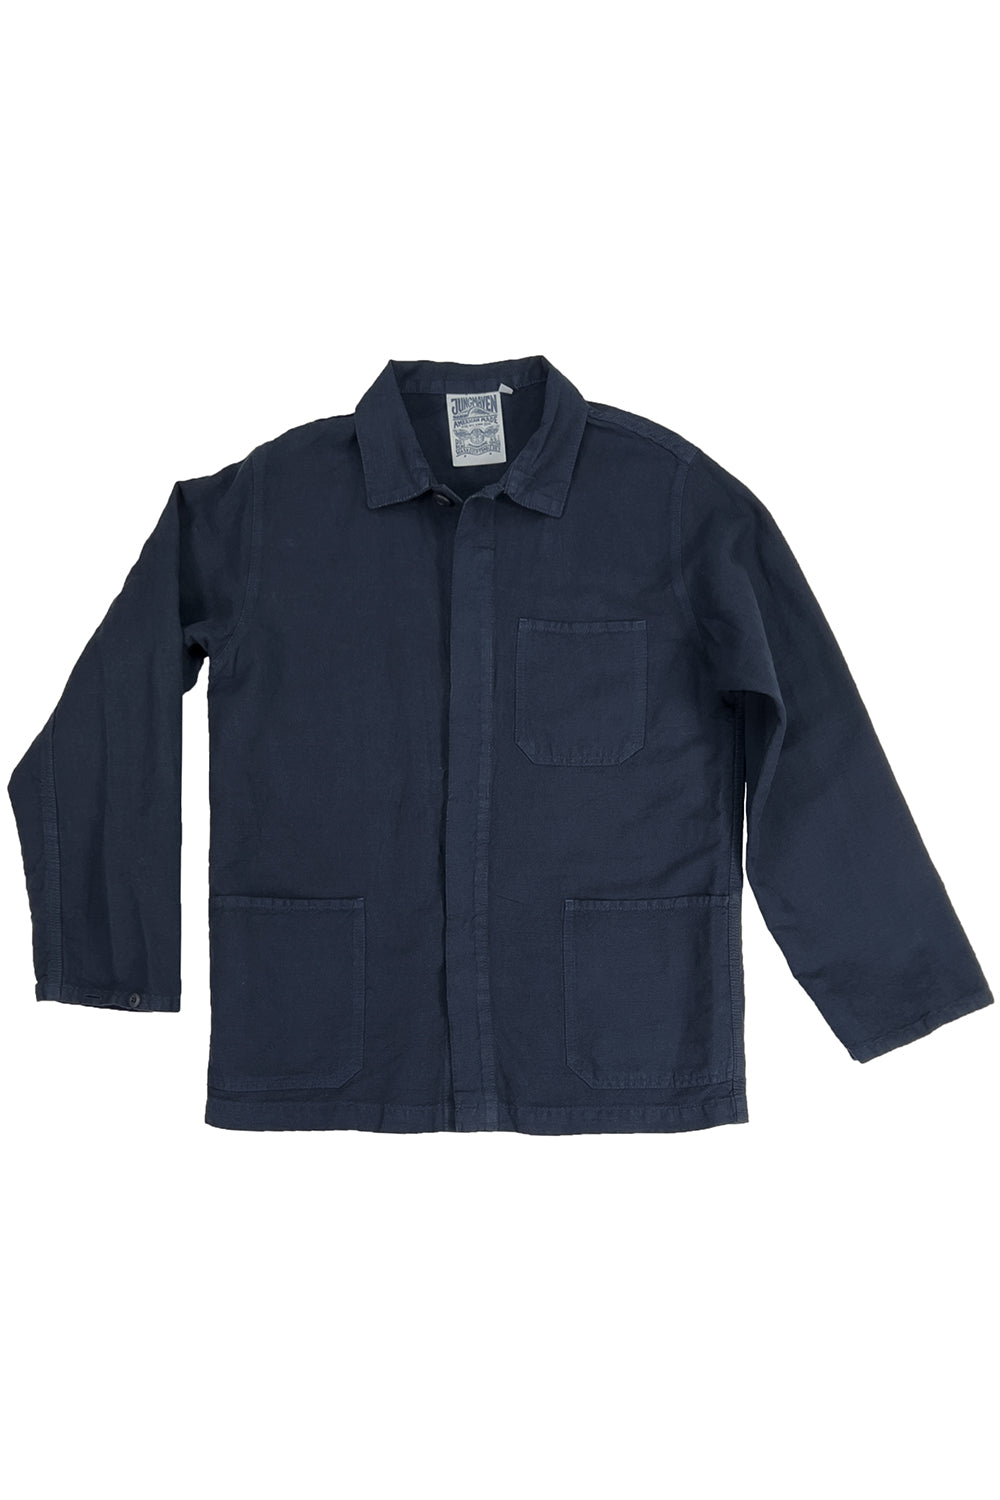 Cascade Jacket | Jungmaven Hemp Clothing & Accessories